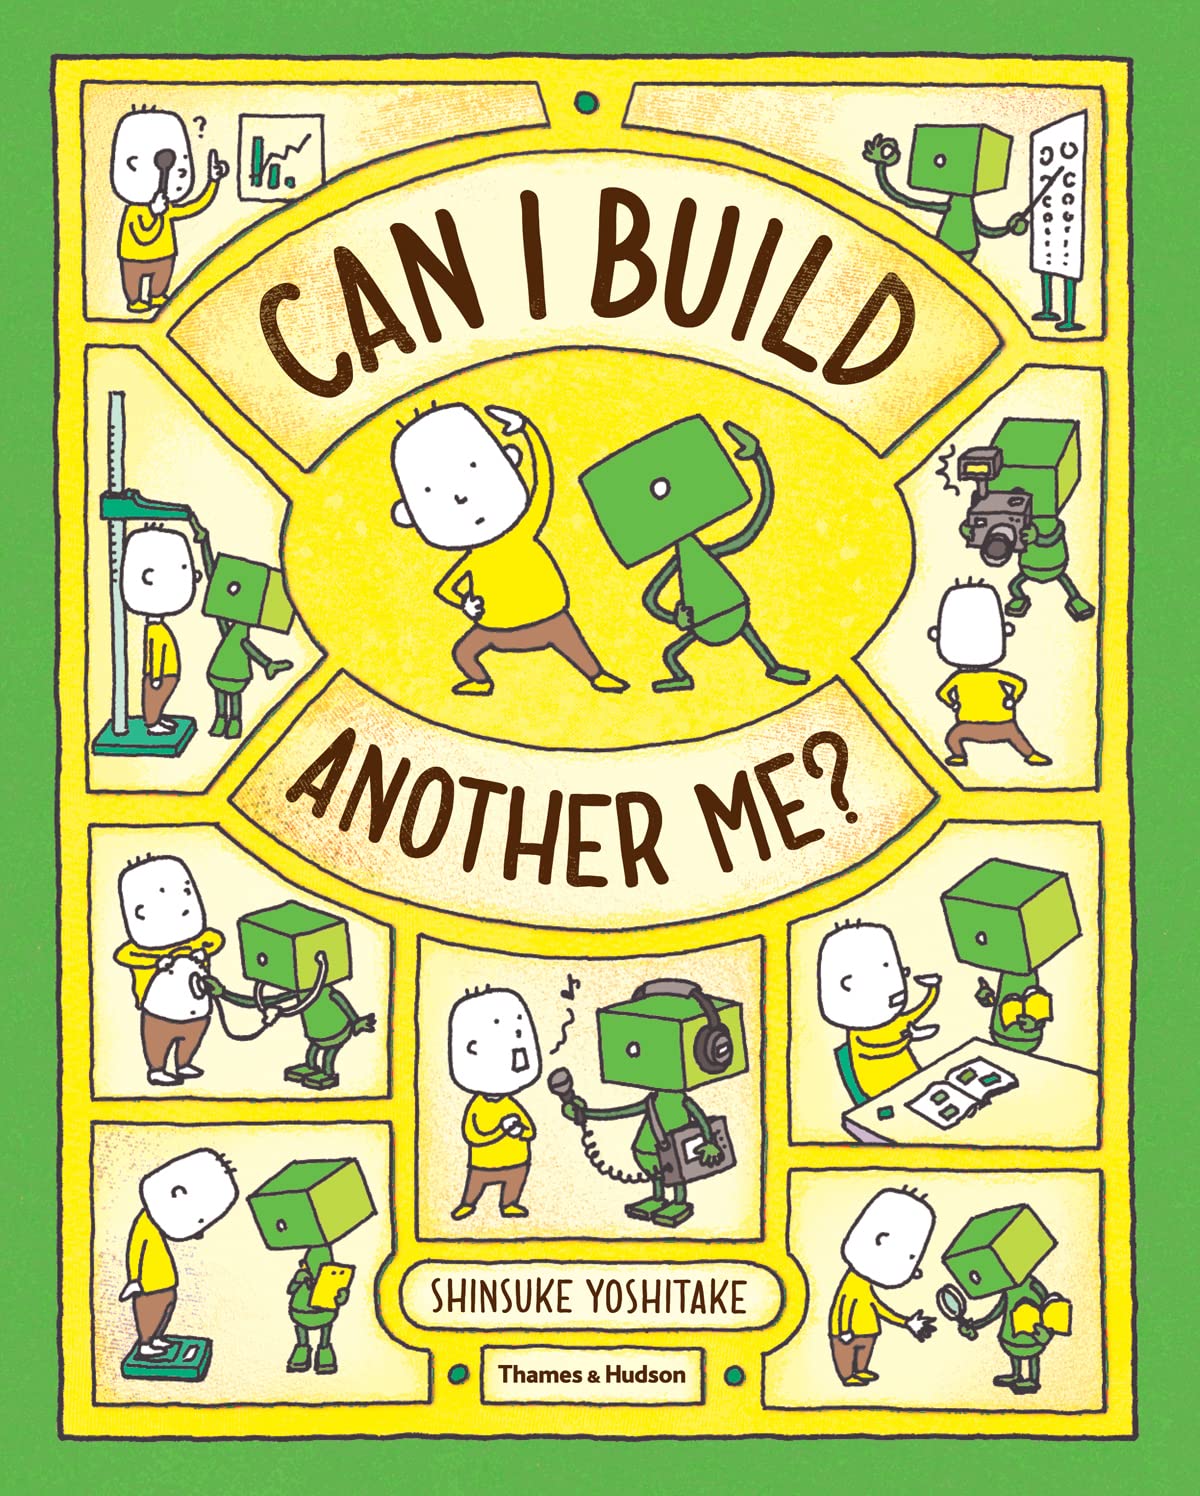 Shinsuke Yoshitake: Can I Build Another Me?